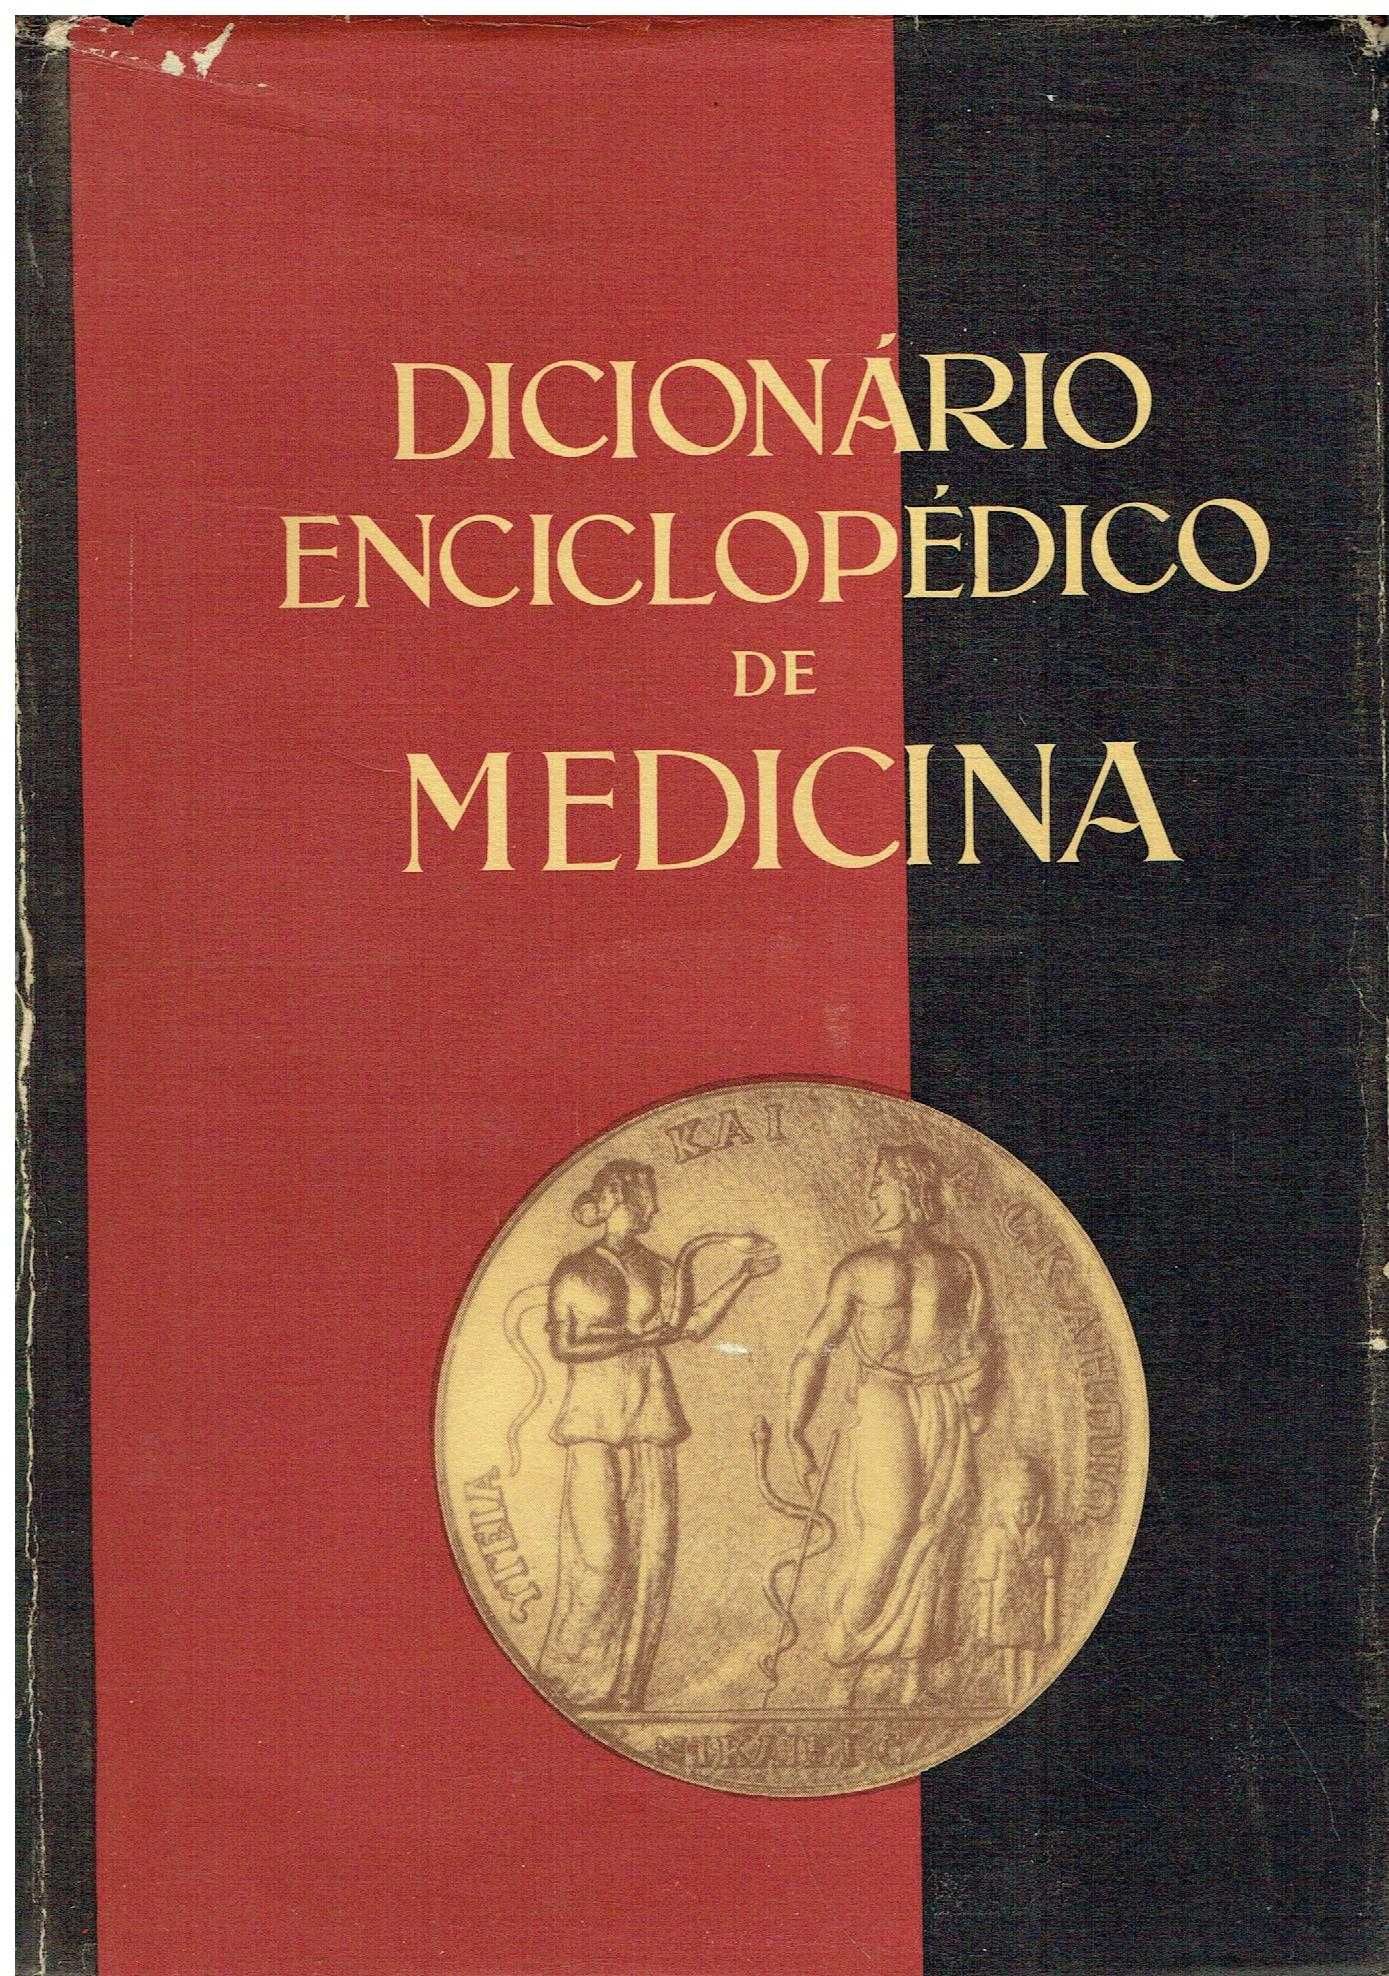 13877
	
Dicionário enciclopédico de medicina -2 Vols